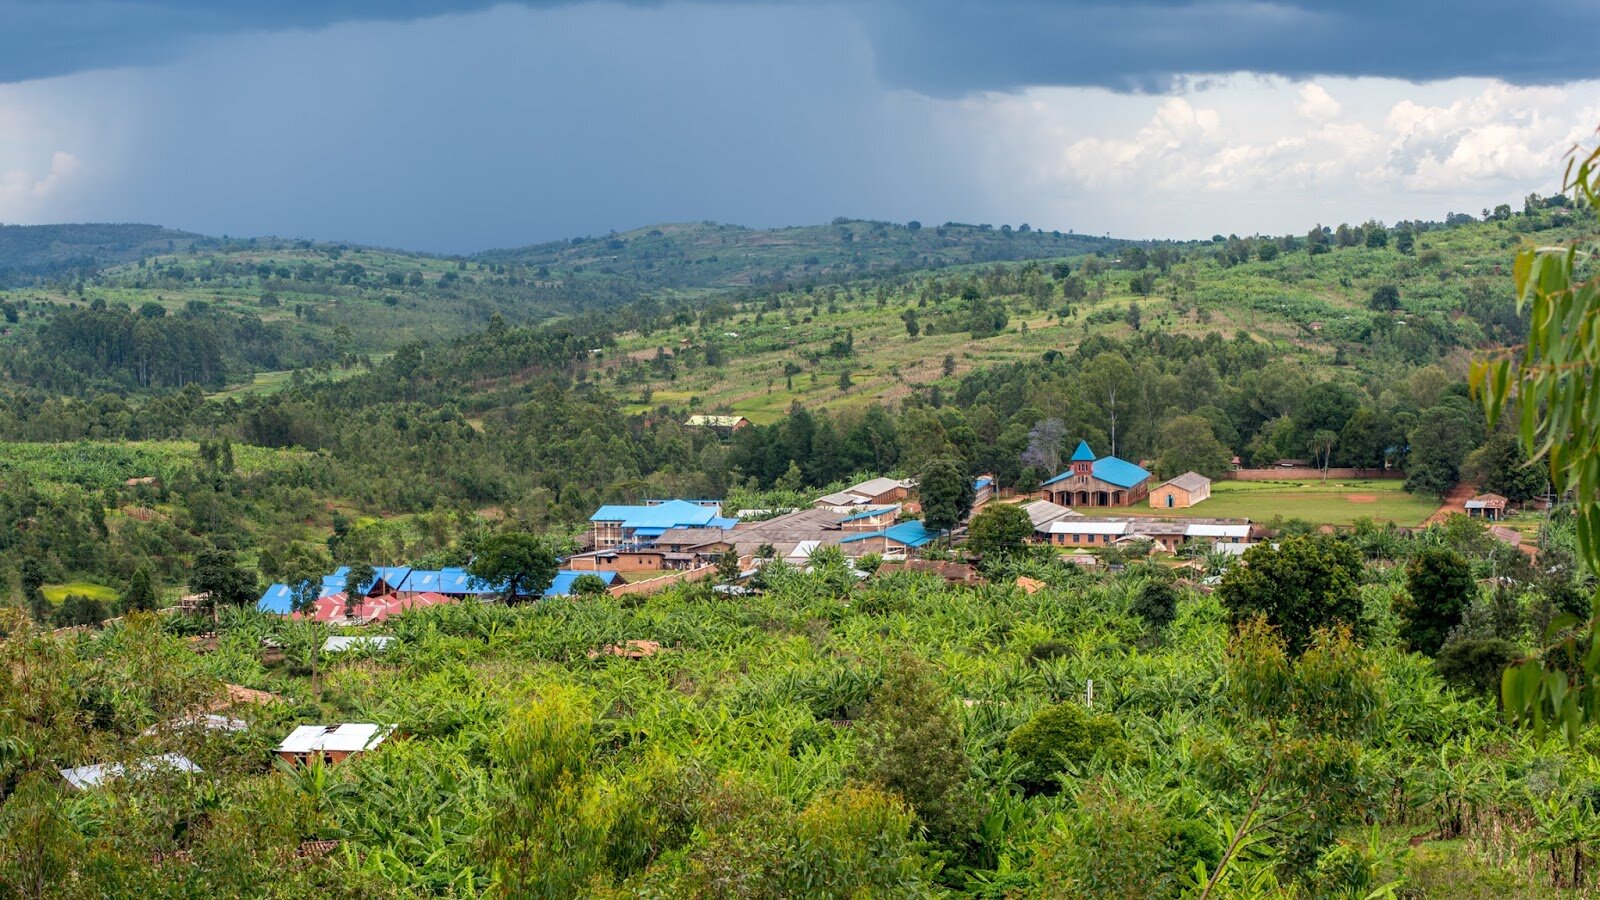 Kibuye Hope Hospital in 2018